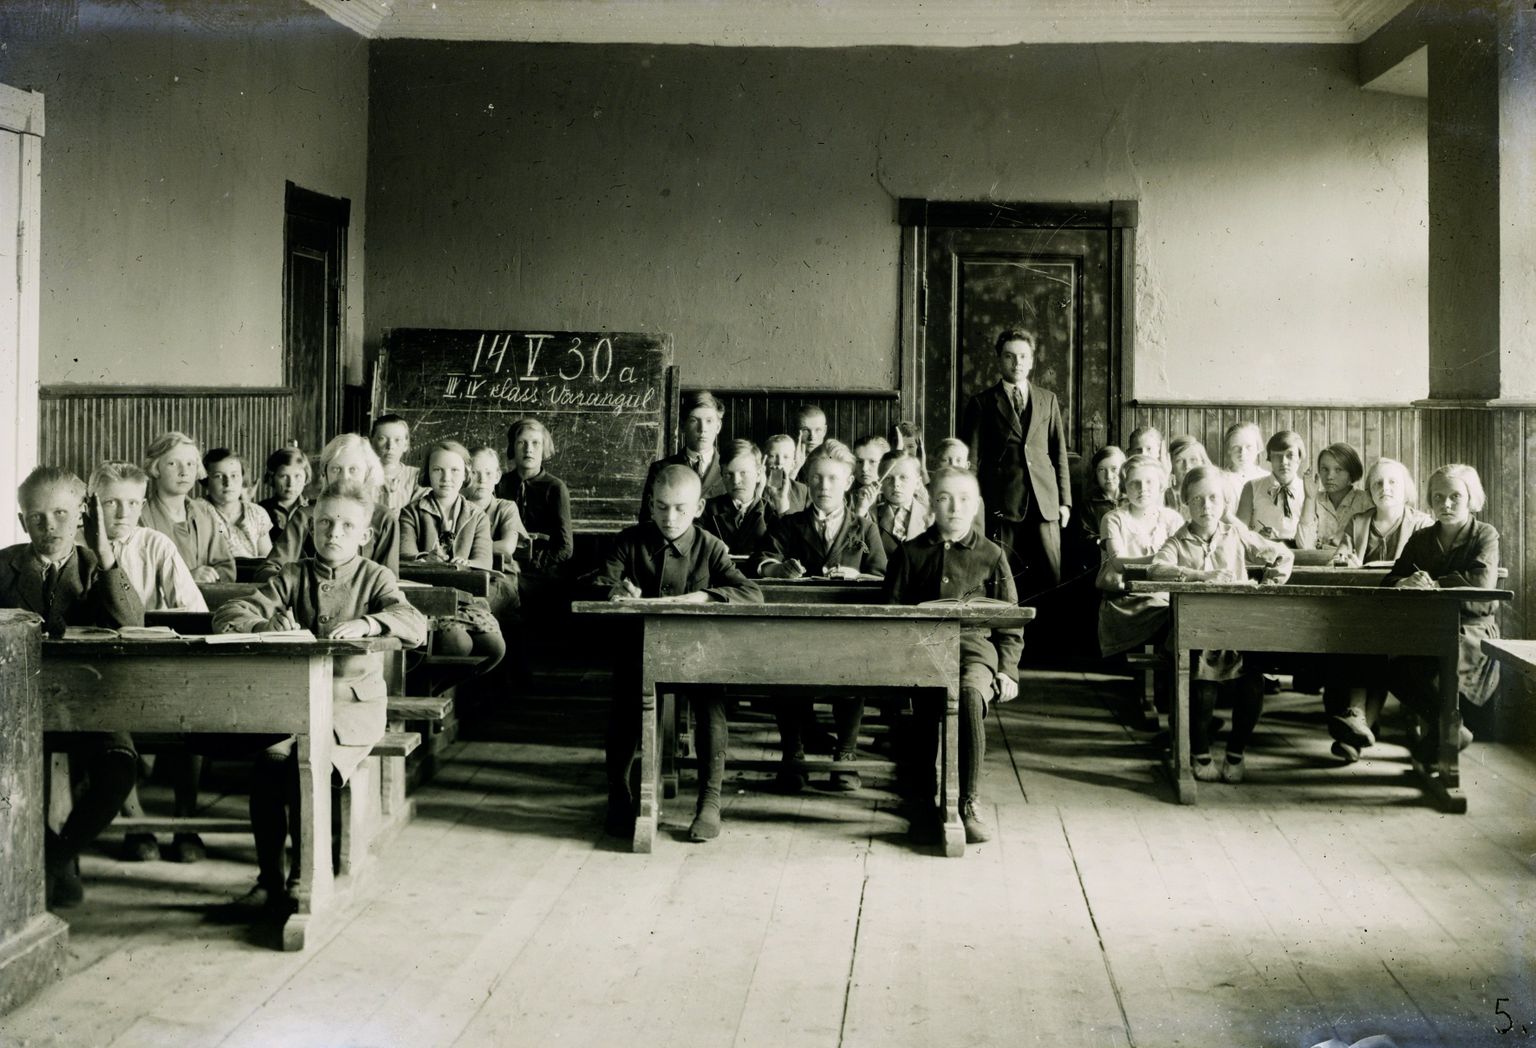 Sellised nägid klassitoad välja ajal, kui Oskar Luts laste hommikul liiga vara kooli käsutamise vastu sõna võttis. Nagu tahvlilt lugeda, on pilt tehtud 14. mail 1930 Varangu koolis Järvamaal.